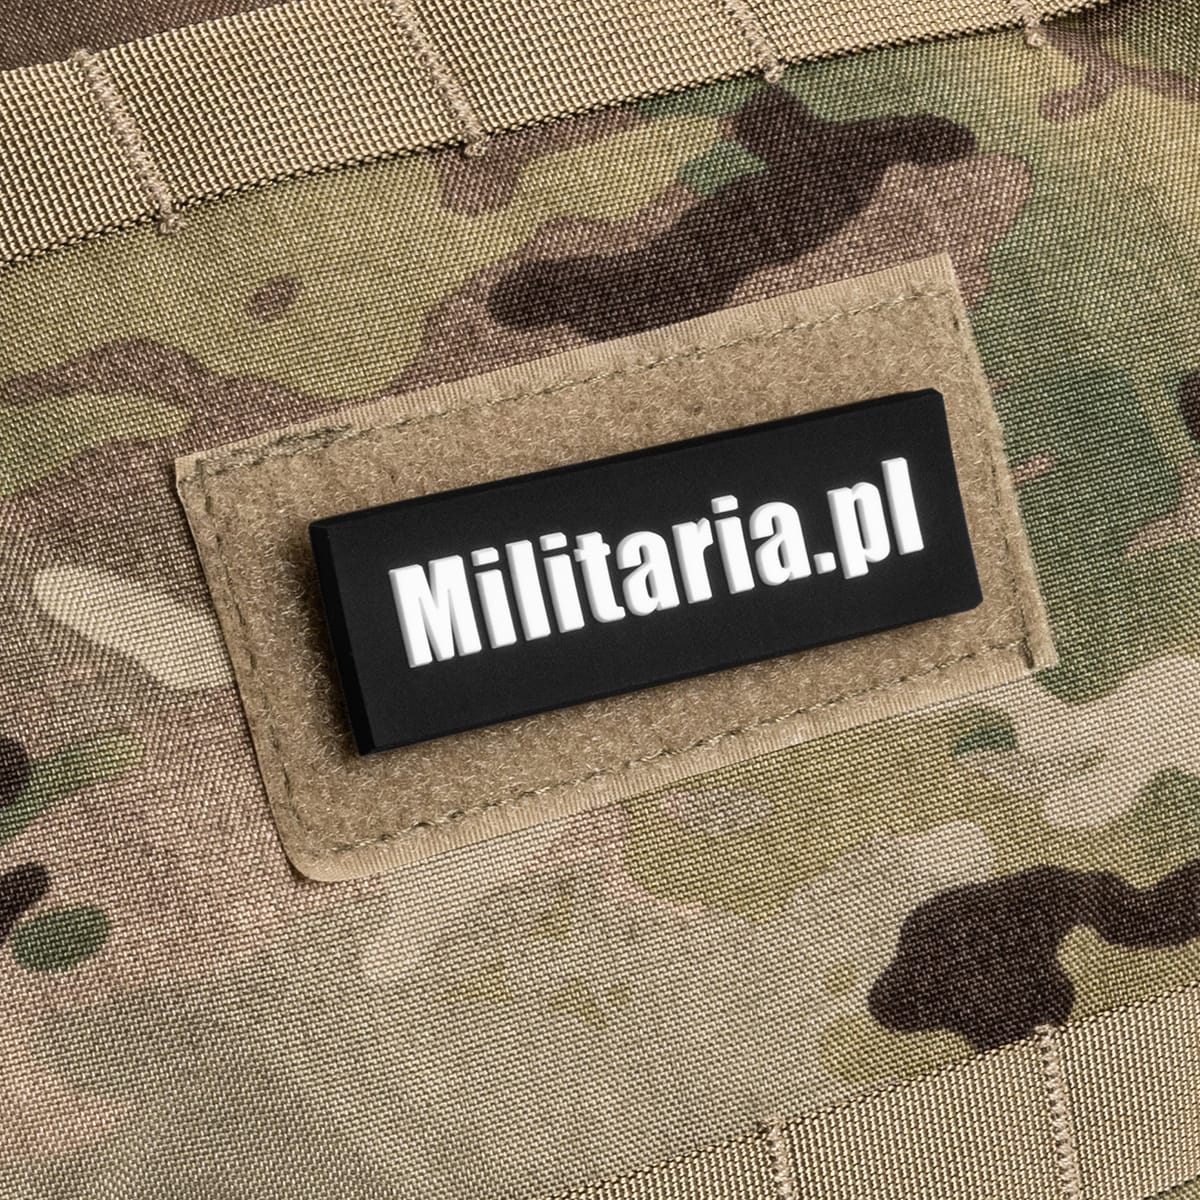 Naszywka PVC 3D Militaria.pl